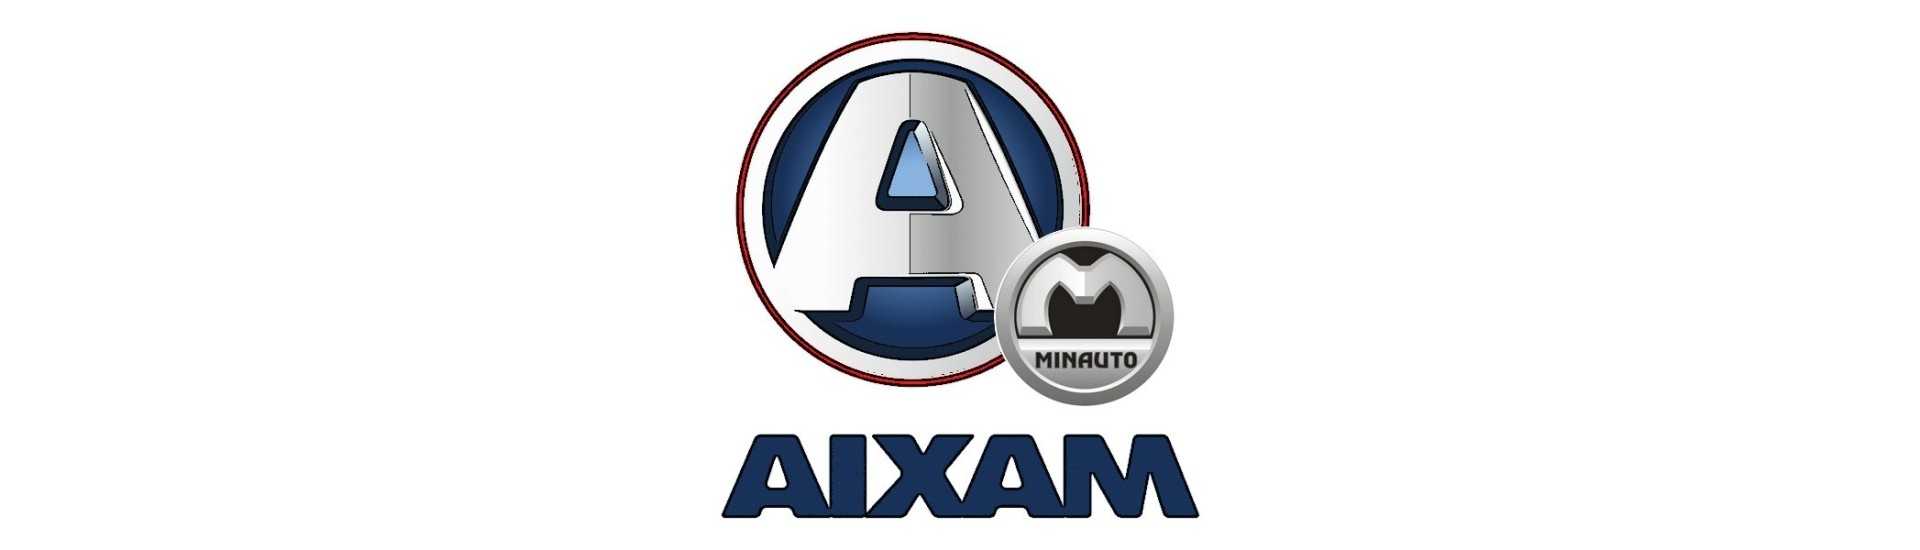 Best price alternative belt car without license Aixam Minauto